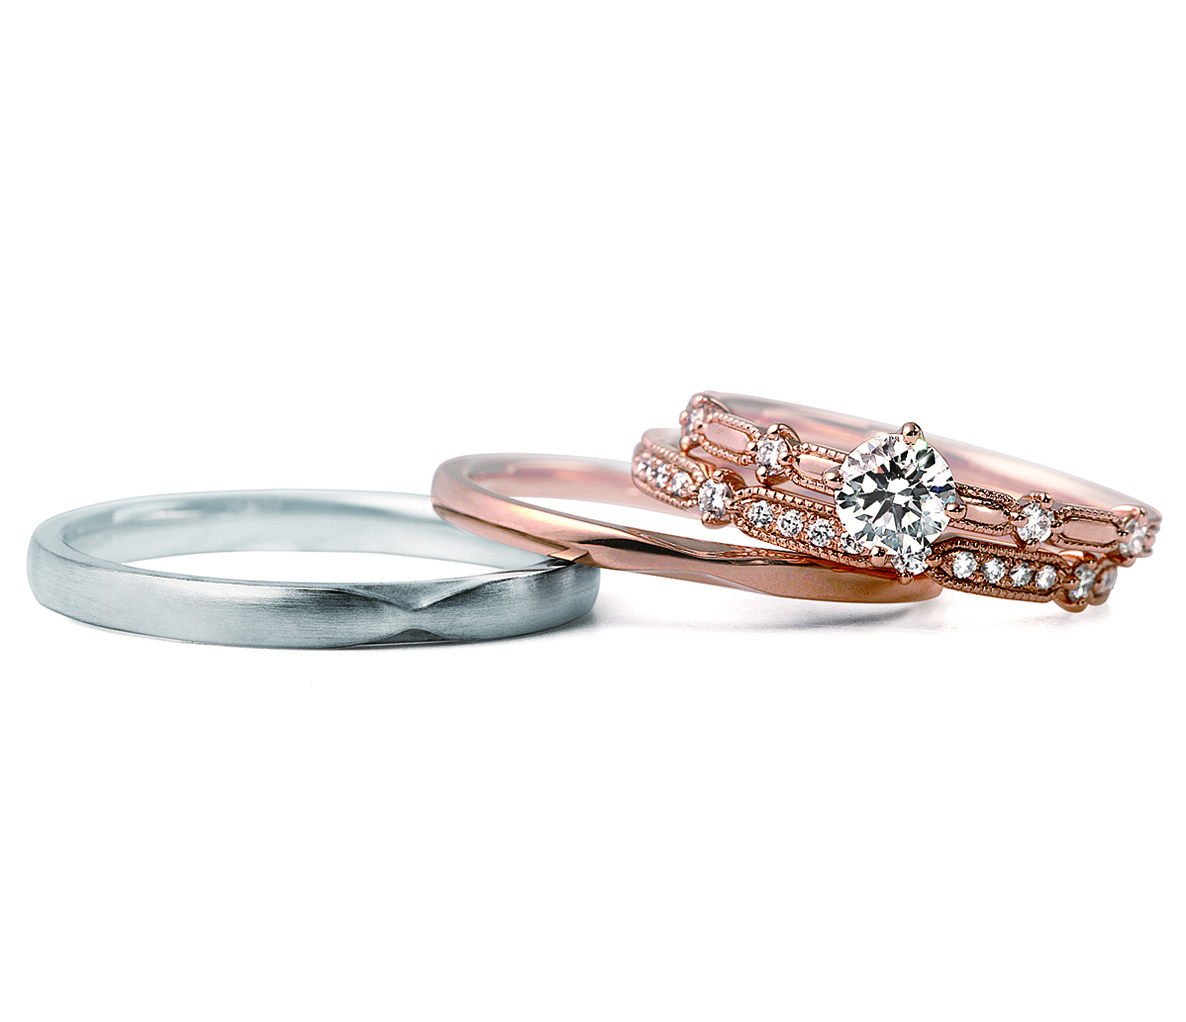 LUCIEの婚約指輪・結婚指輪「クロシェ」